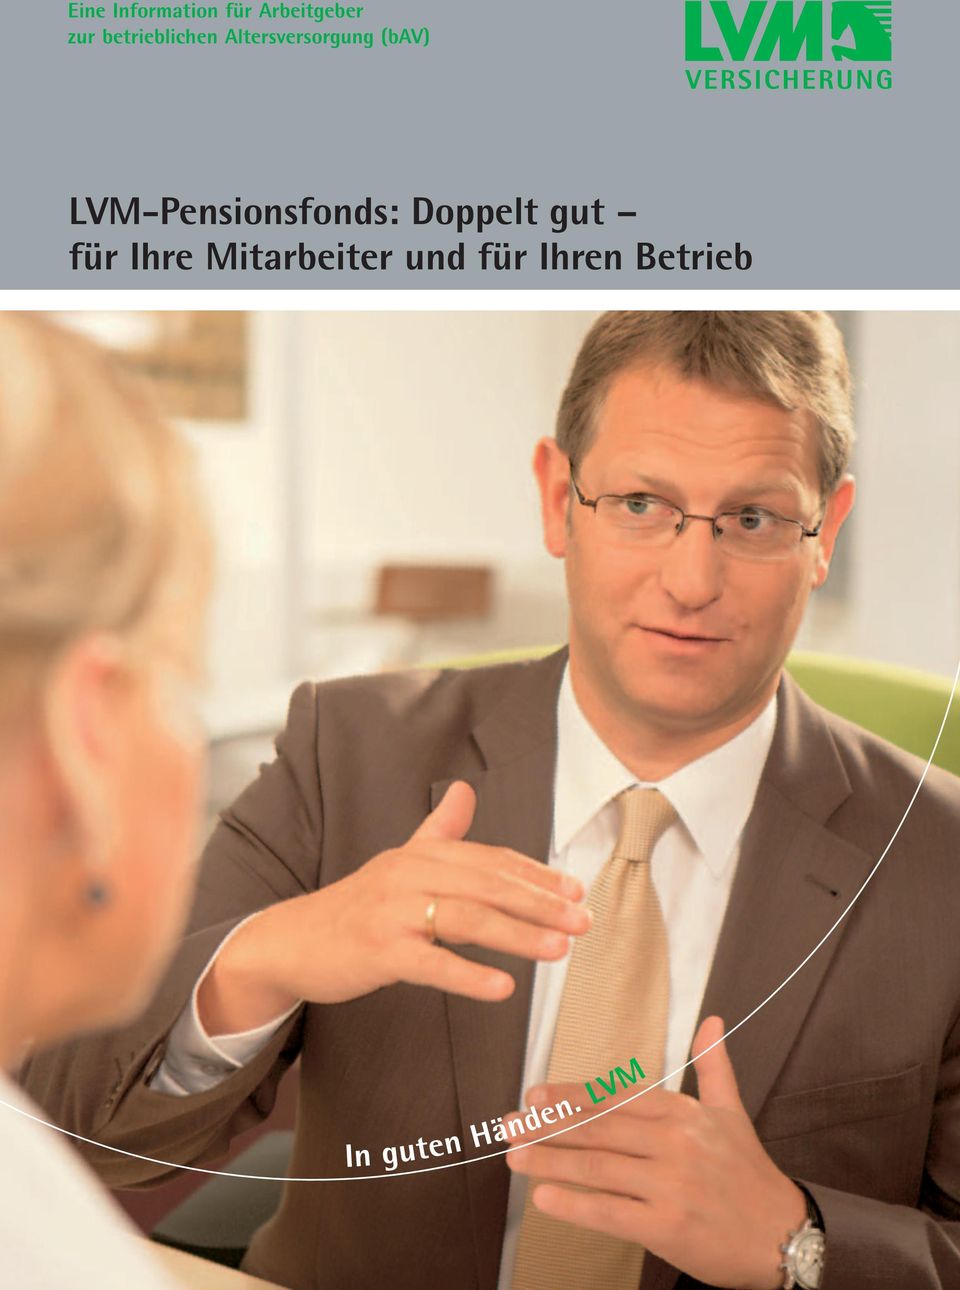 LVM-Pensionsfonds: Doppelt gut für